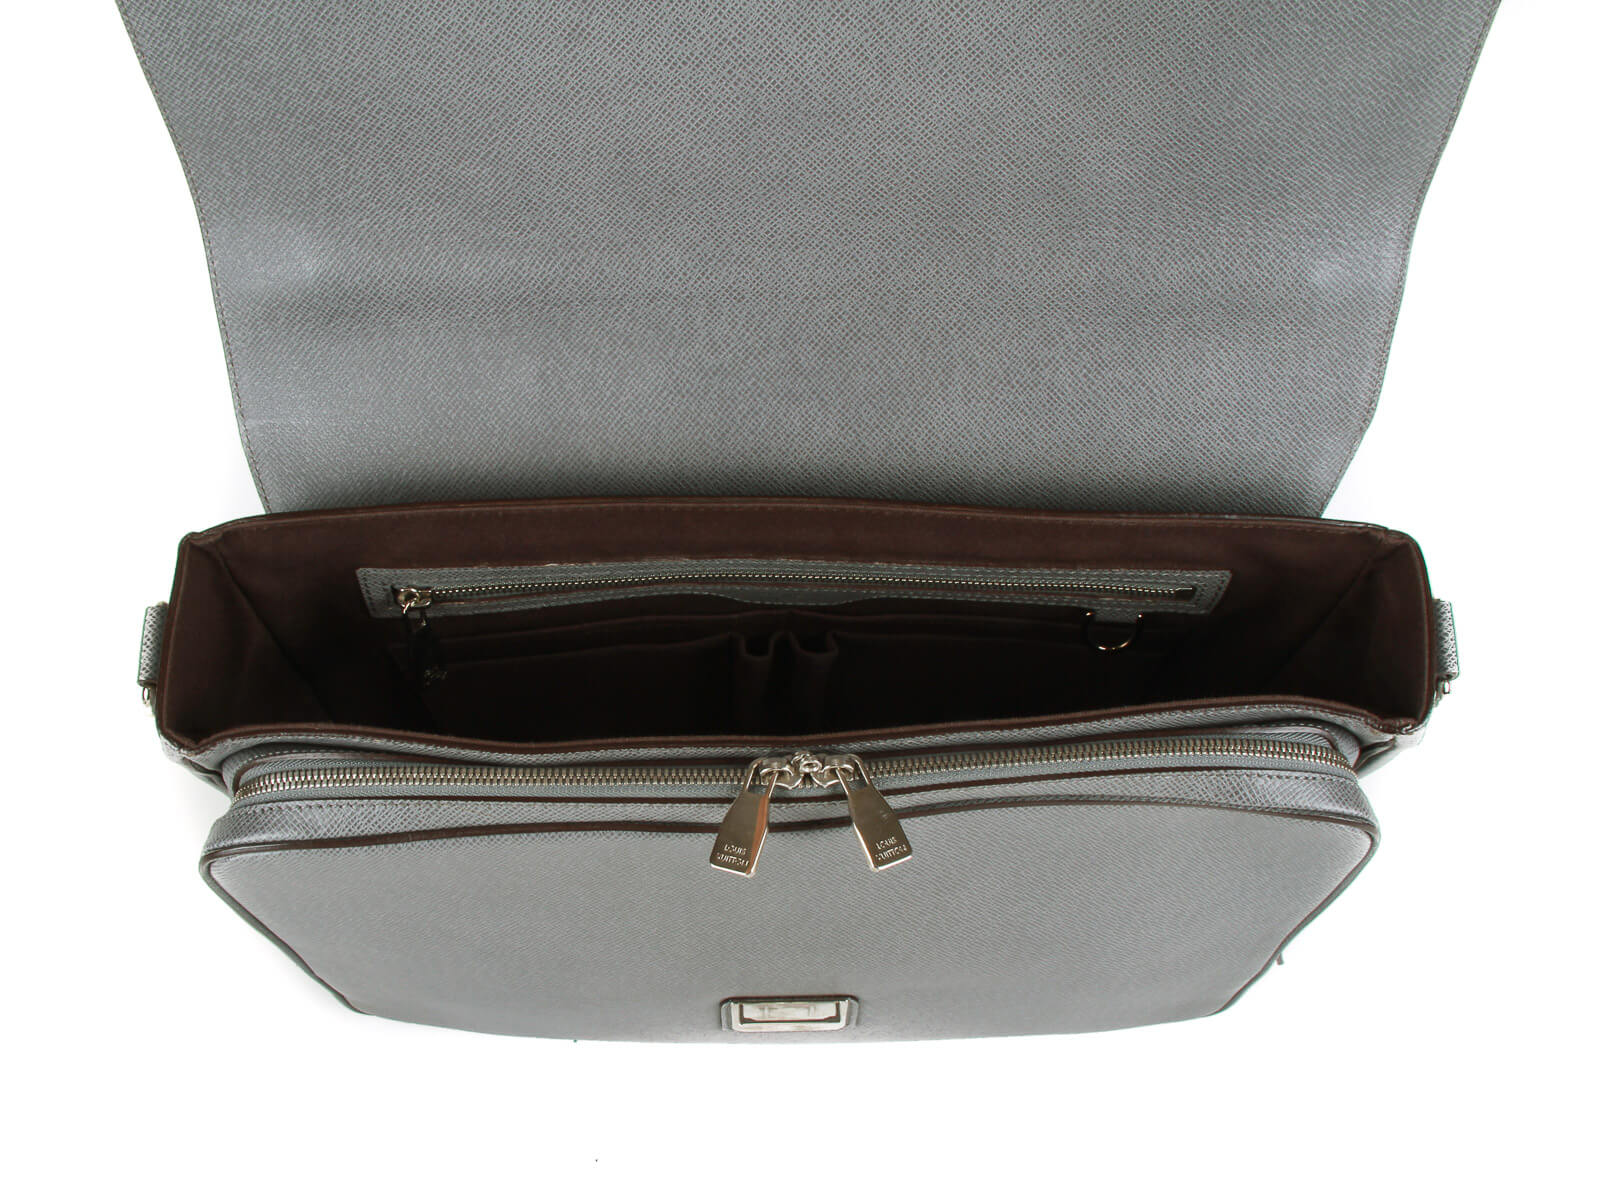 Louis Vuitton Monogram Davis 2way Tote Briefcase Bag 614lvs616 –  Bagriculture